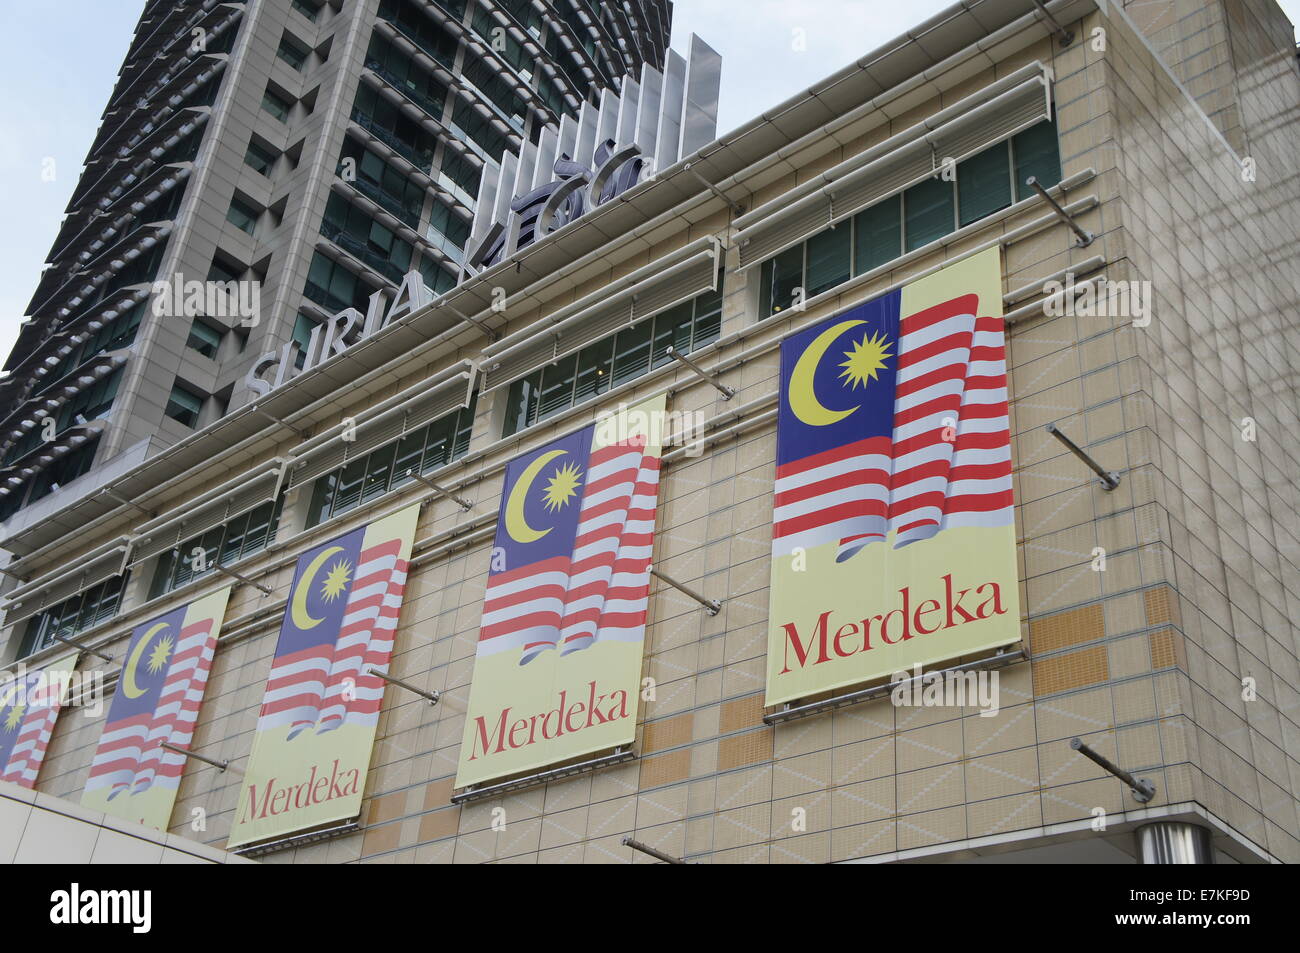 Drapeaux de la Malaisie au cours de la fête de l'indépendance nationale Banque D'Images